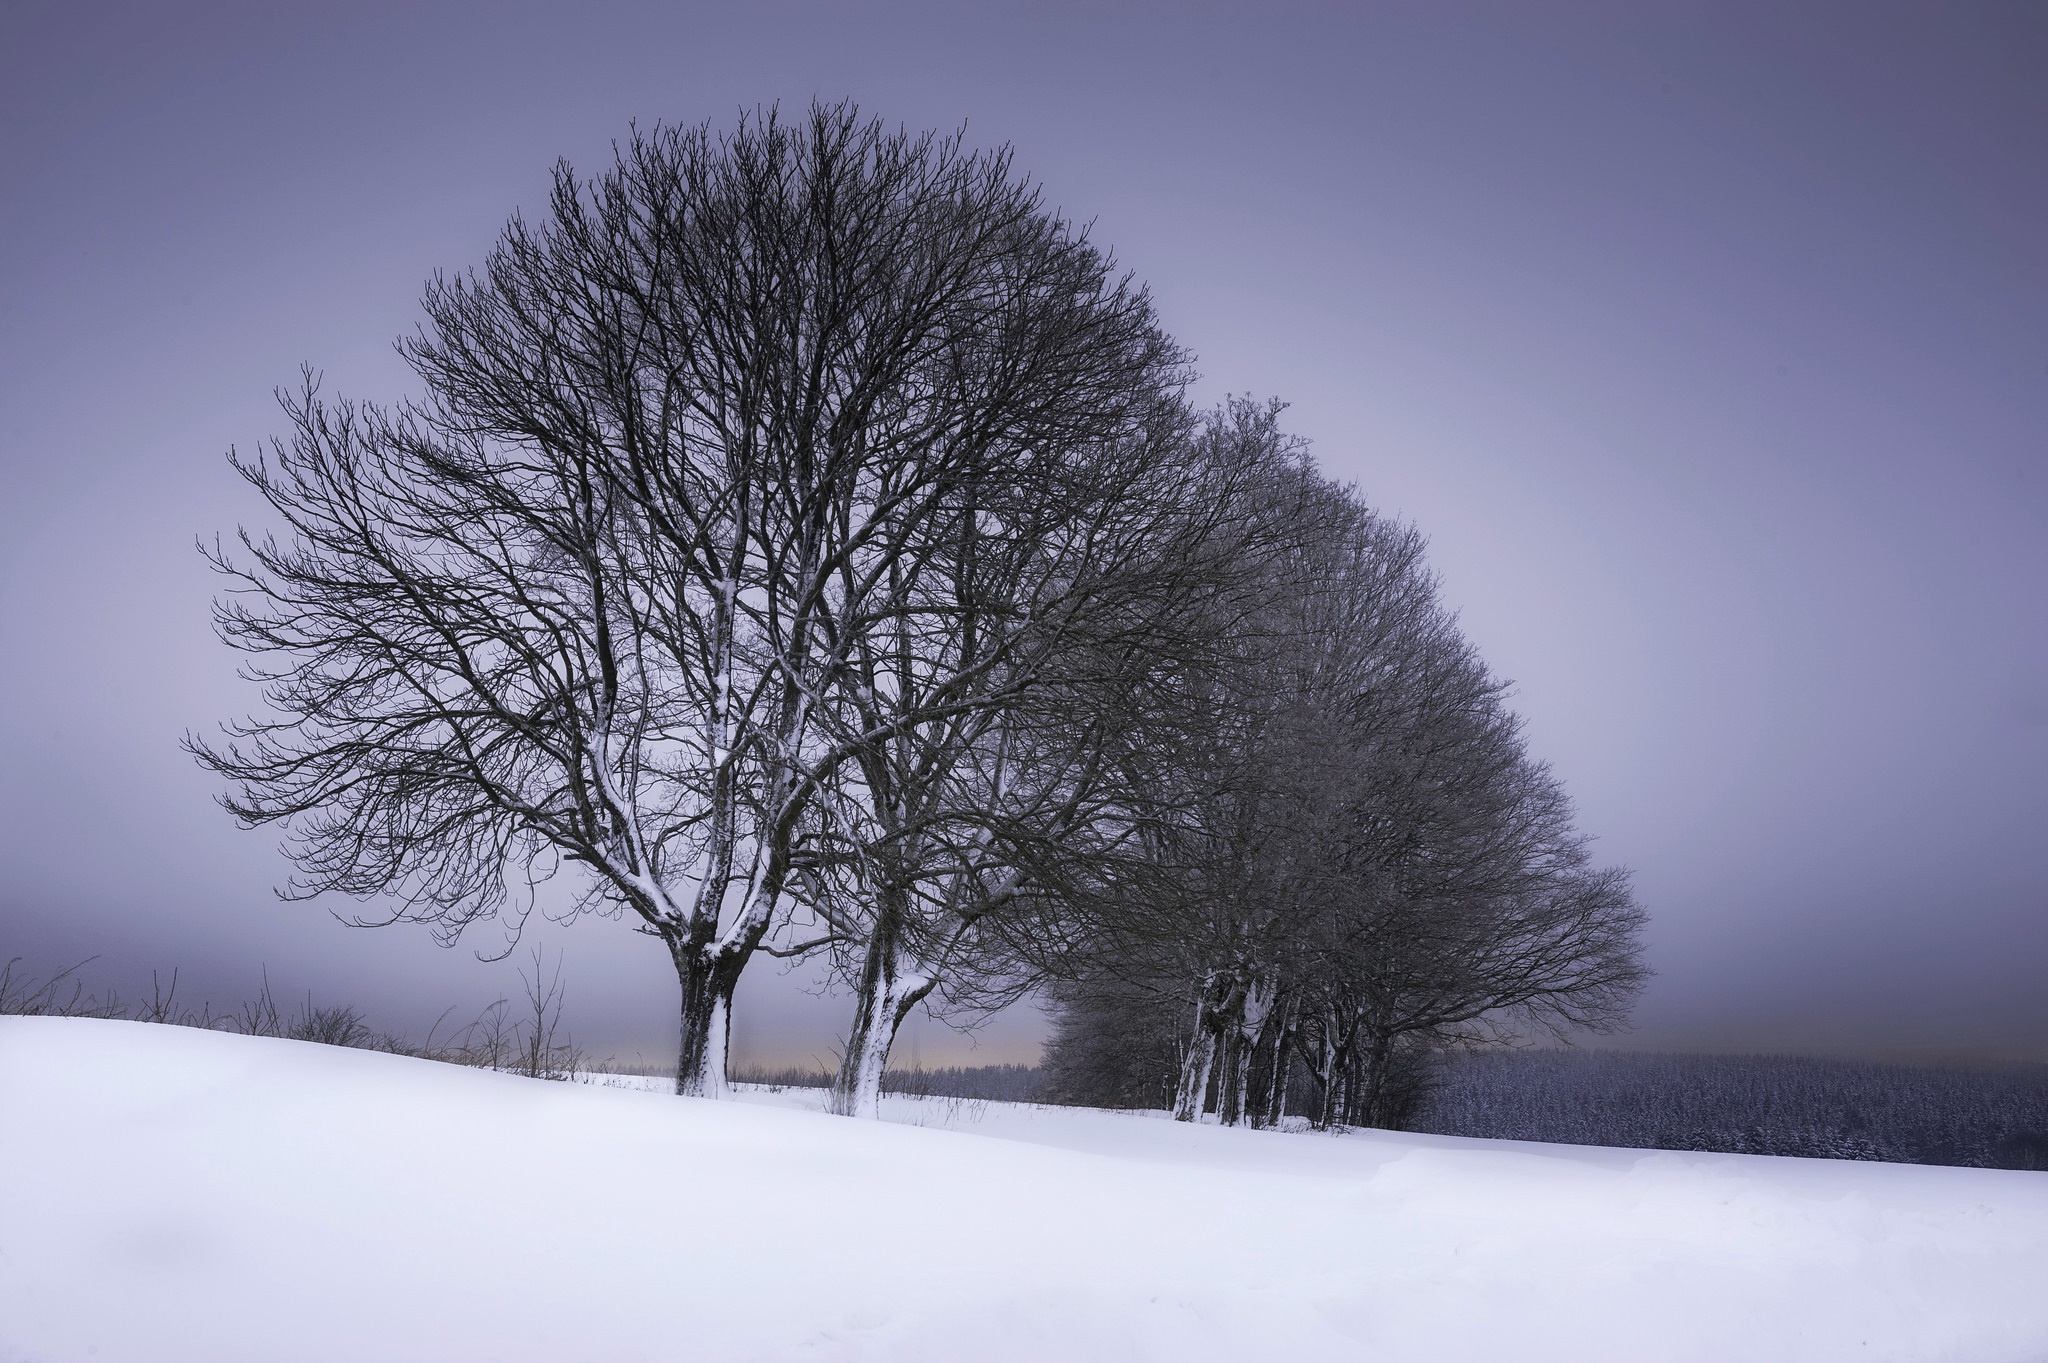 Скачать картинку Зима, Природа, Снег, Дерево, Ландшафт, Земля/природа, Обсаженный Деревьями в телефон бесплатно.